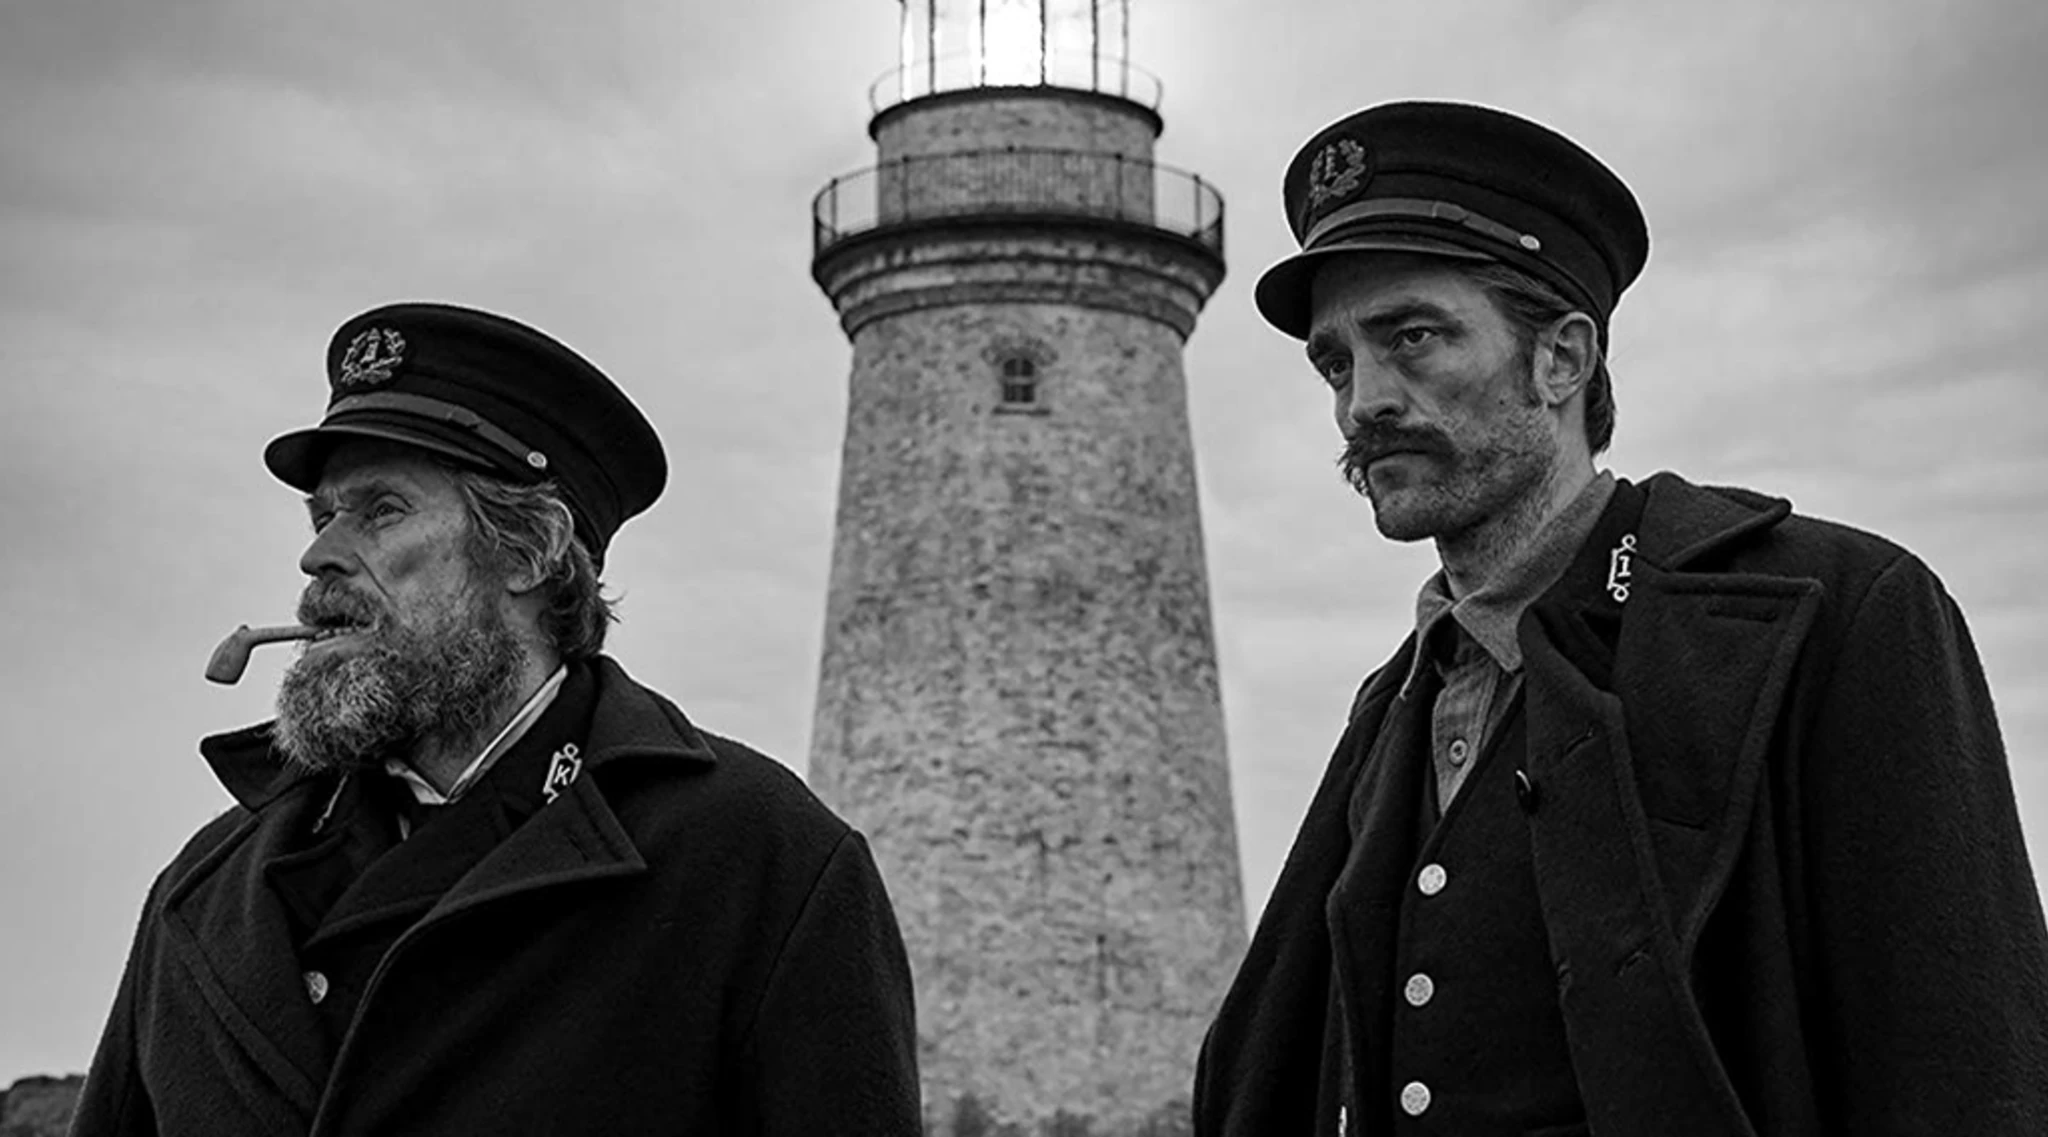 Robert Eggers, Willem Dafoe, Robert Pattinson and Jarin Blaschke Discuss 'The Lighthouse'